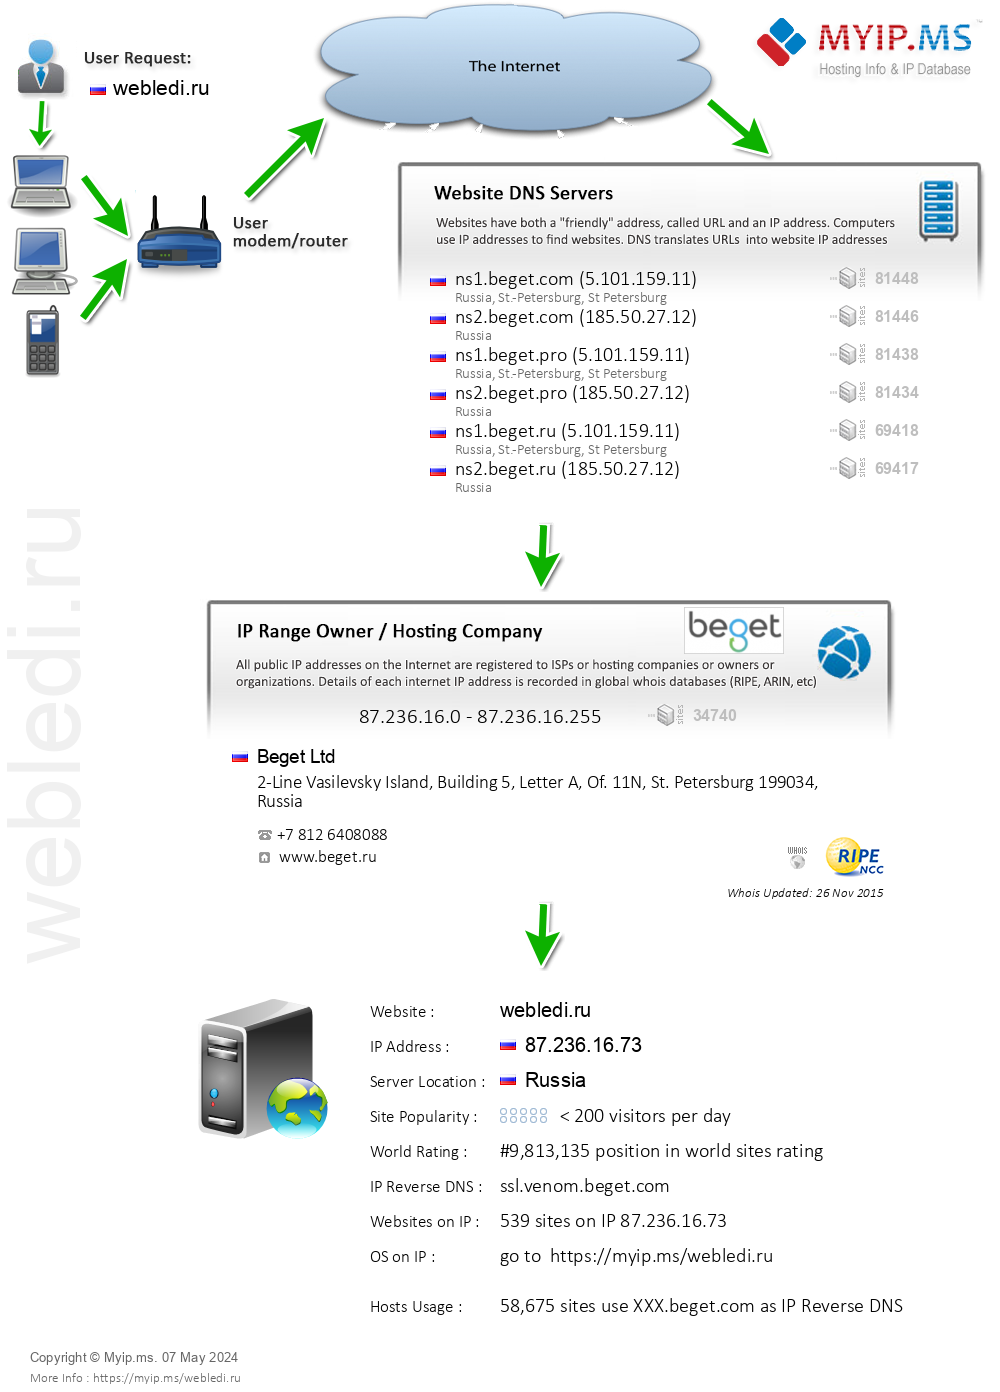 Webledi.ru - Website Hosting Visual IP Diagram